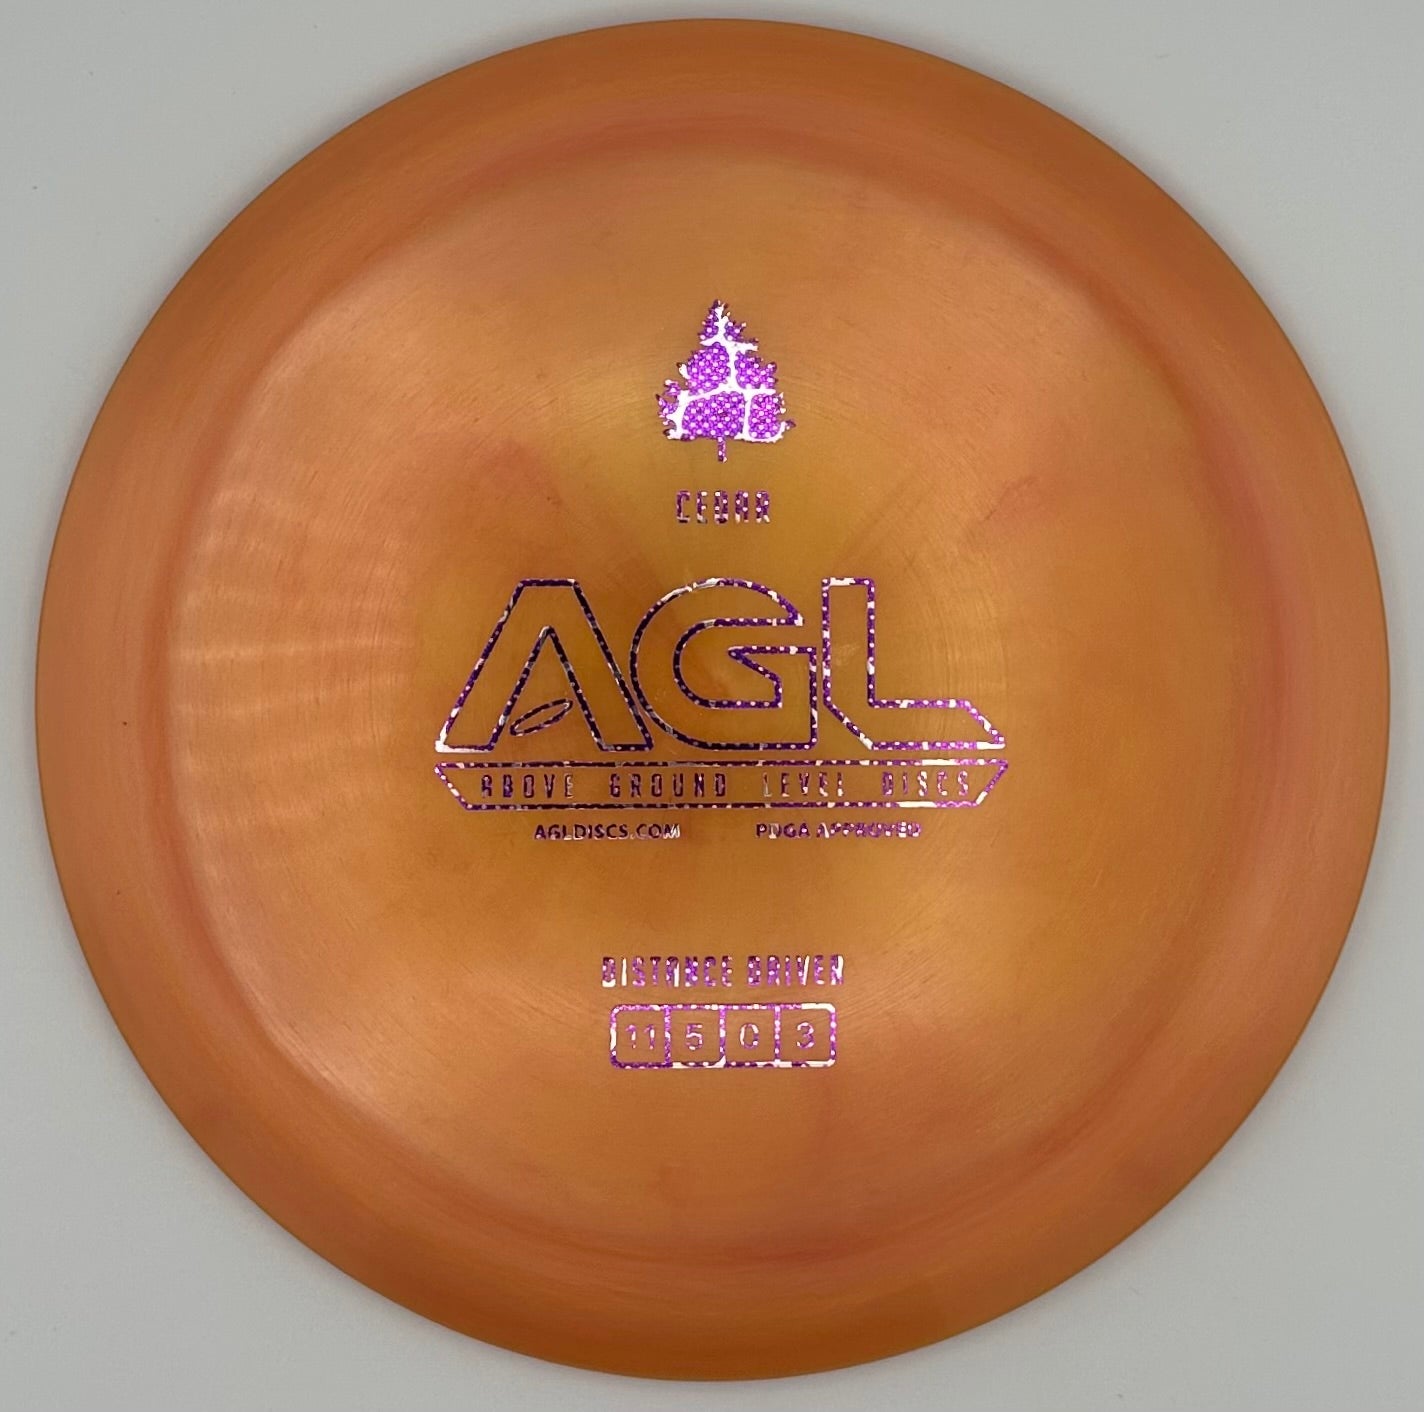 AGL Discs - Orange Sunset Alpine Cedar (Stamped by Gateway)